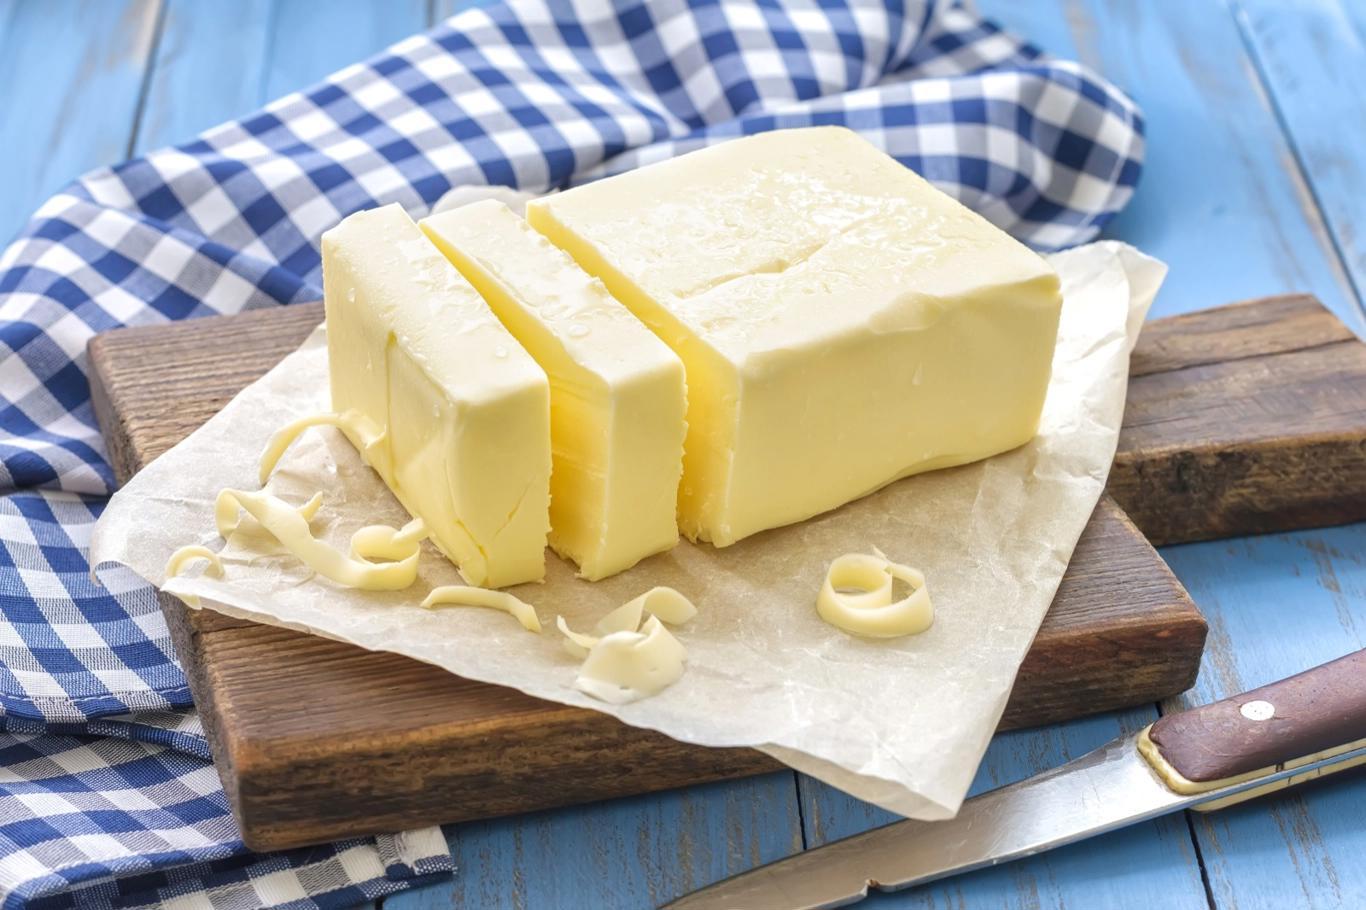 Co dát do těsta místo masla?